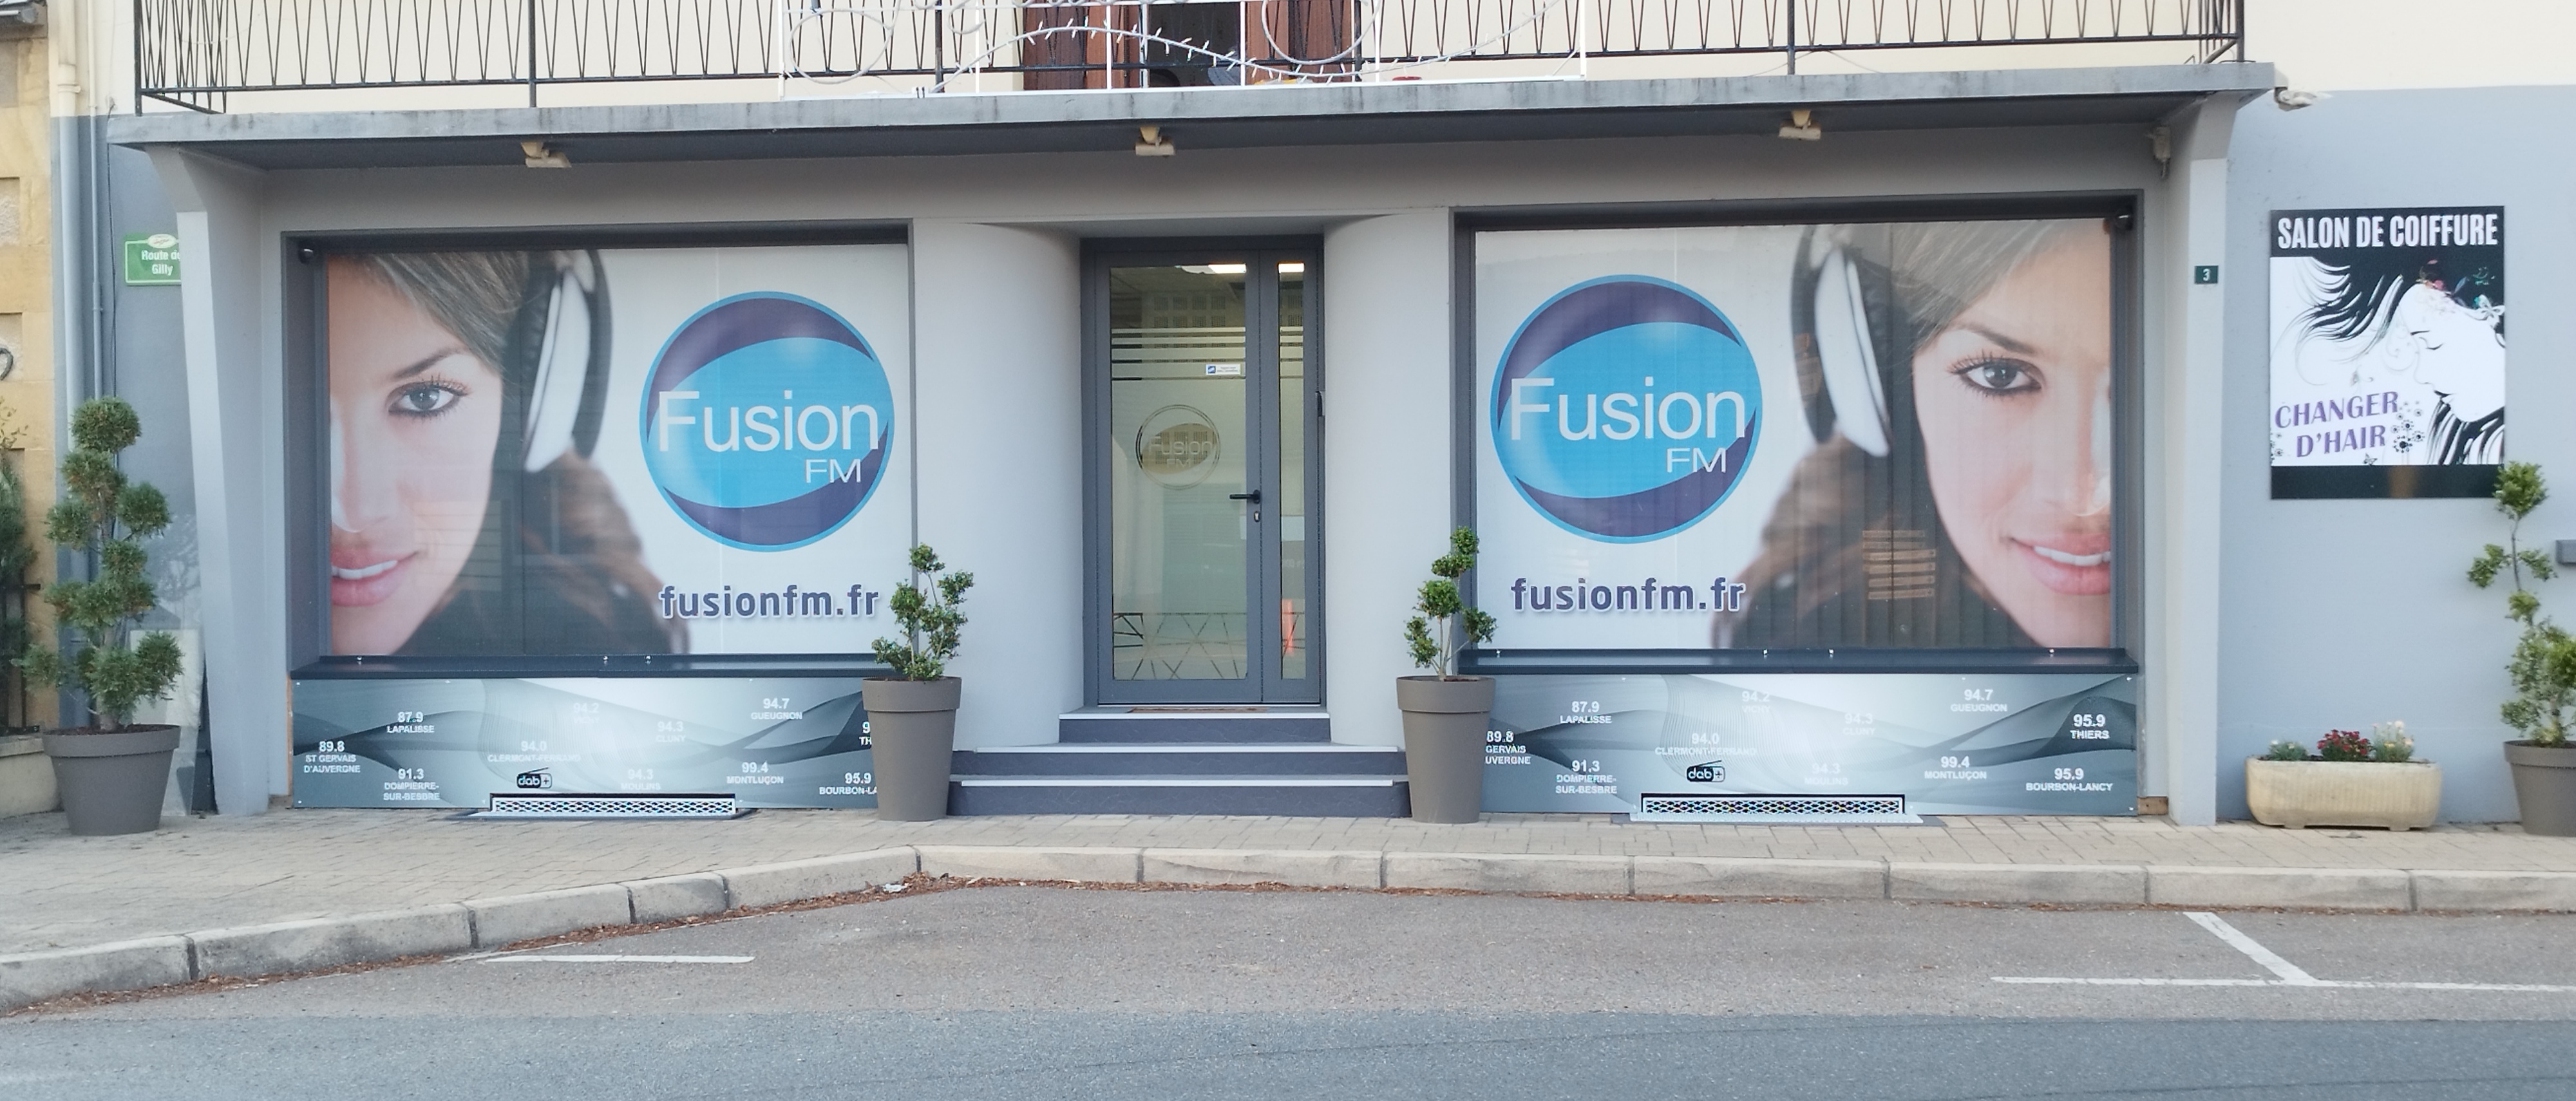 Fusion FM dans de nouveaux locaux 